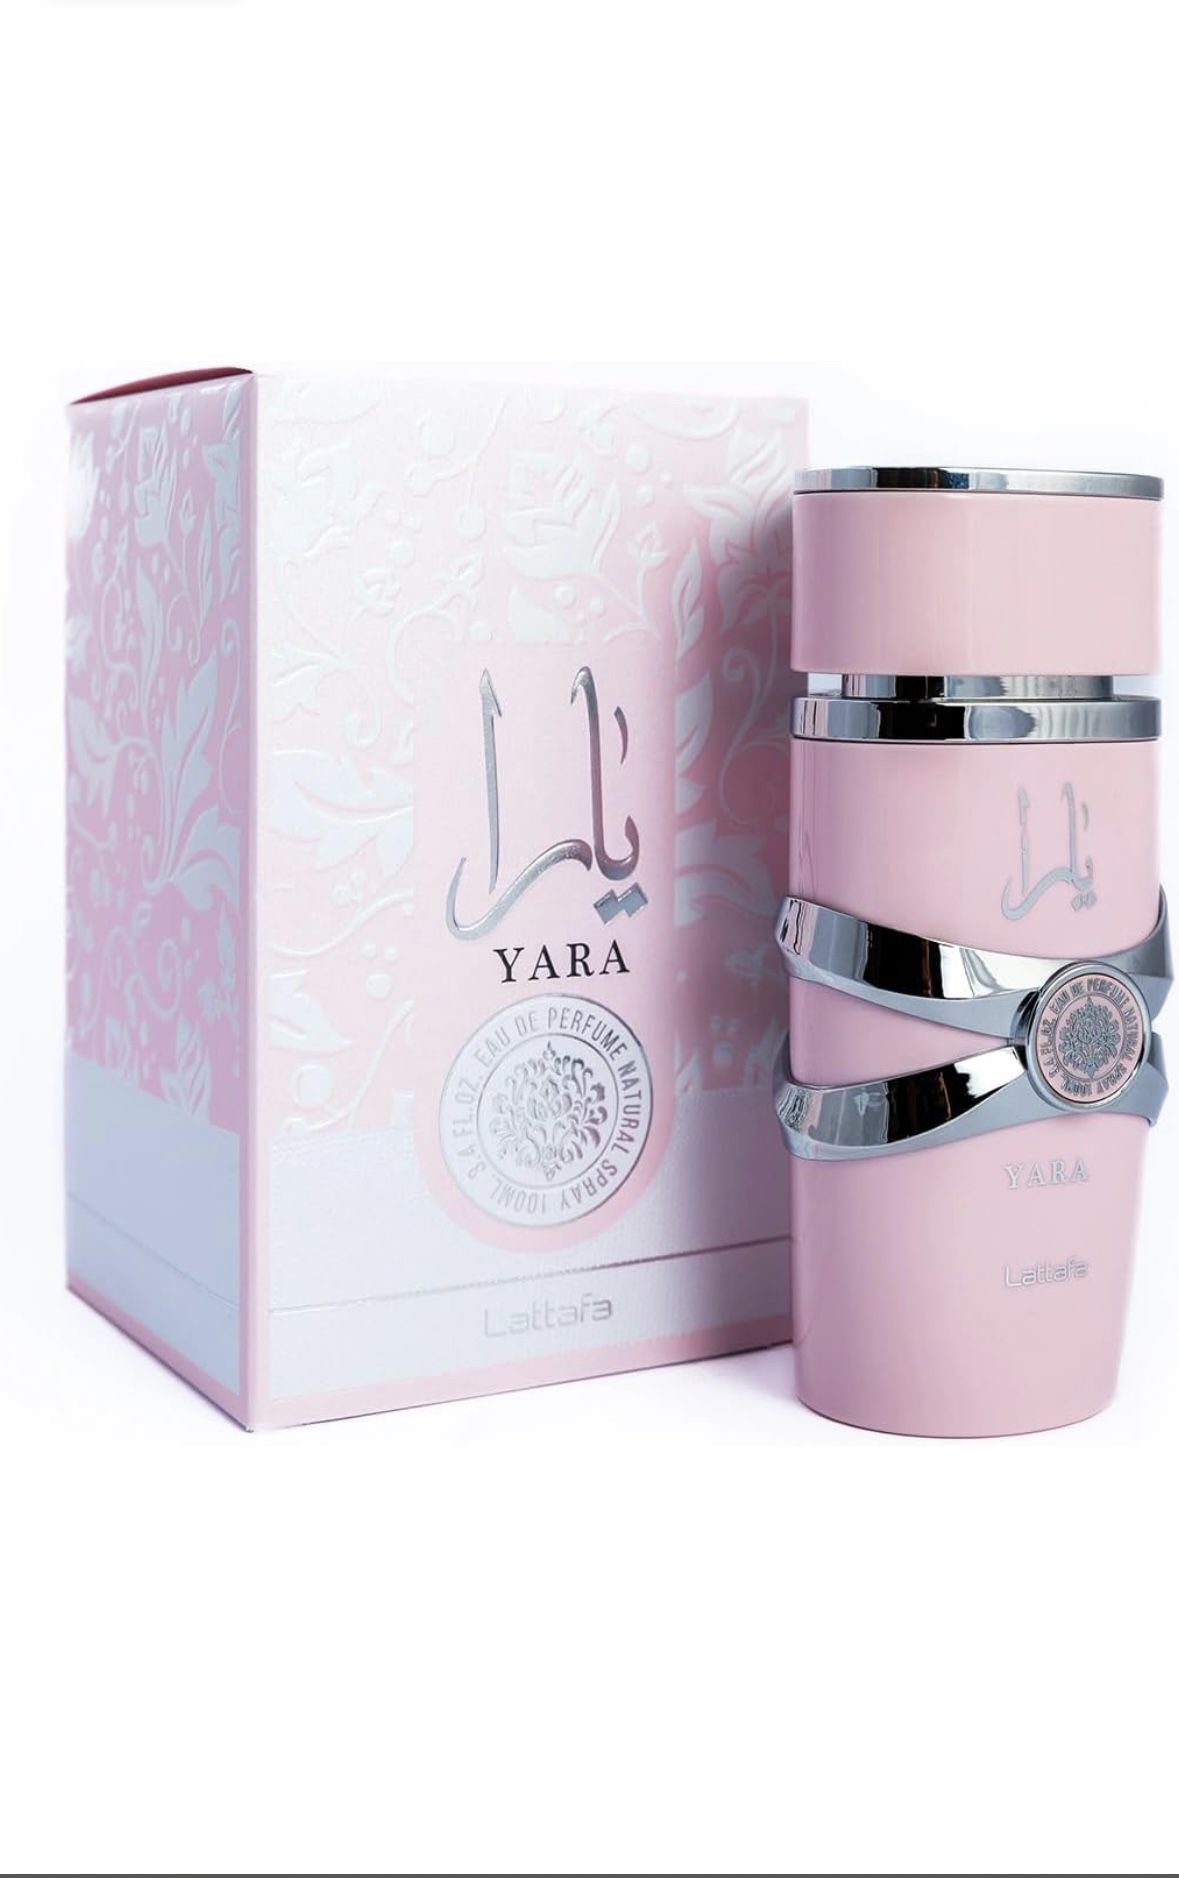 Authentic Lattafa Yara for Women Eau de Parfum